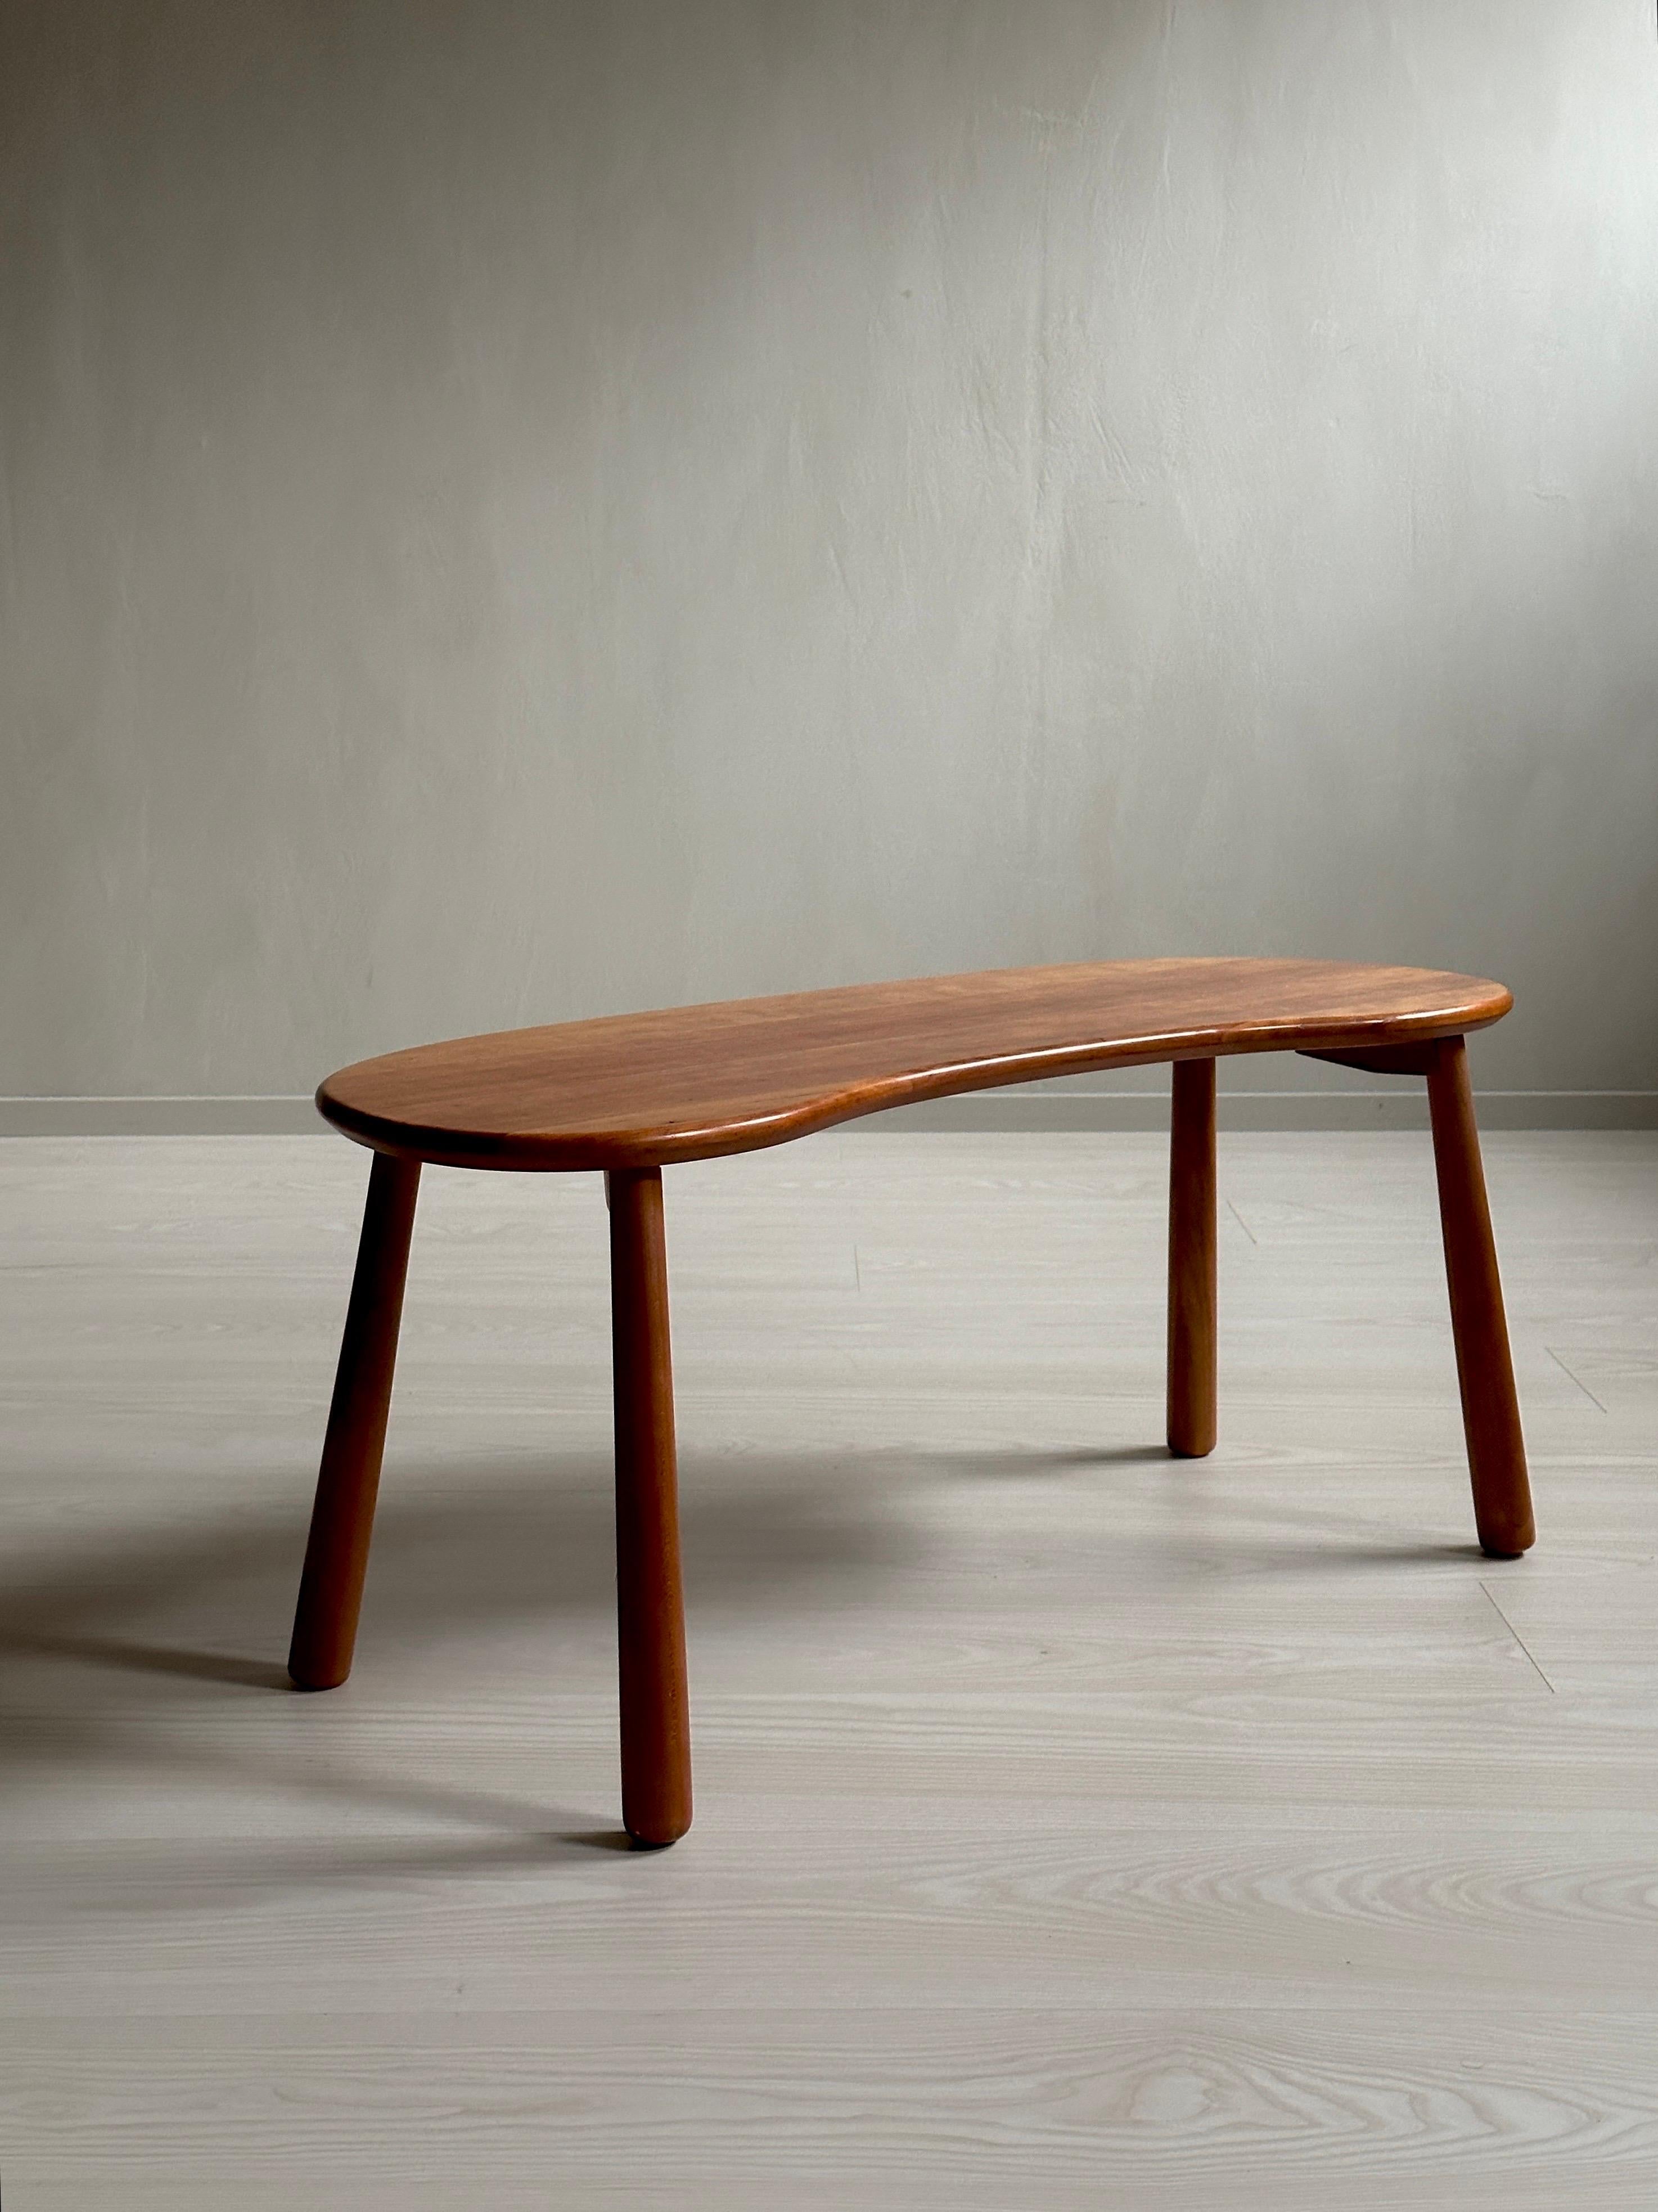 Magnifique table d'appoint ou tabouret du designer suédois Josef Frank pour Svenskt Tenn, c.C. années 1970. Ce beau meuble est entièrement fabriqué en acajou massif, ce qui le rend assez exclusif. Les brûlures sont marquées en dessous du nom du